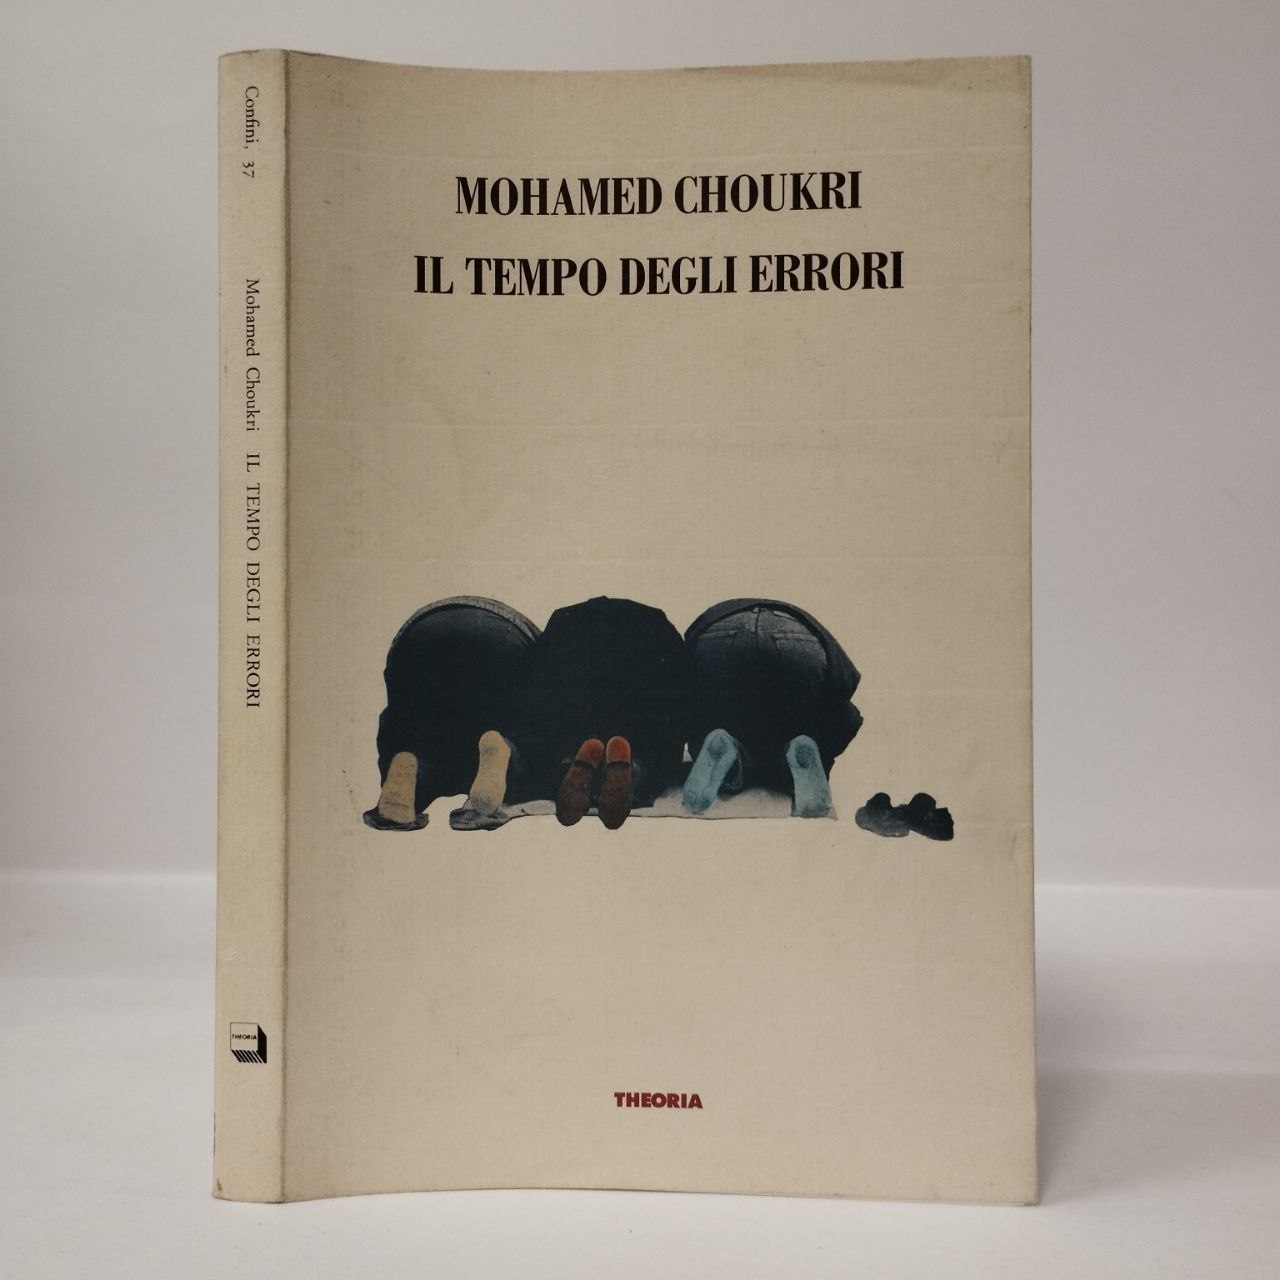 Il tempo degli errori. Mohamed Choukri. Theoria, 1993. - Equilibri Libreria  Torino